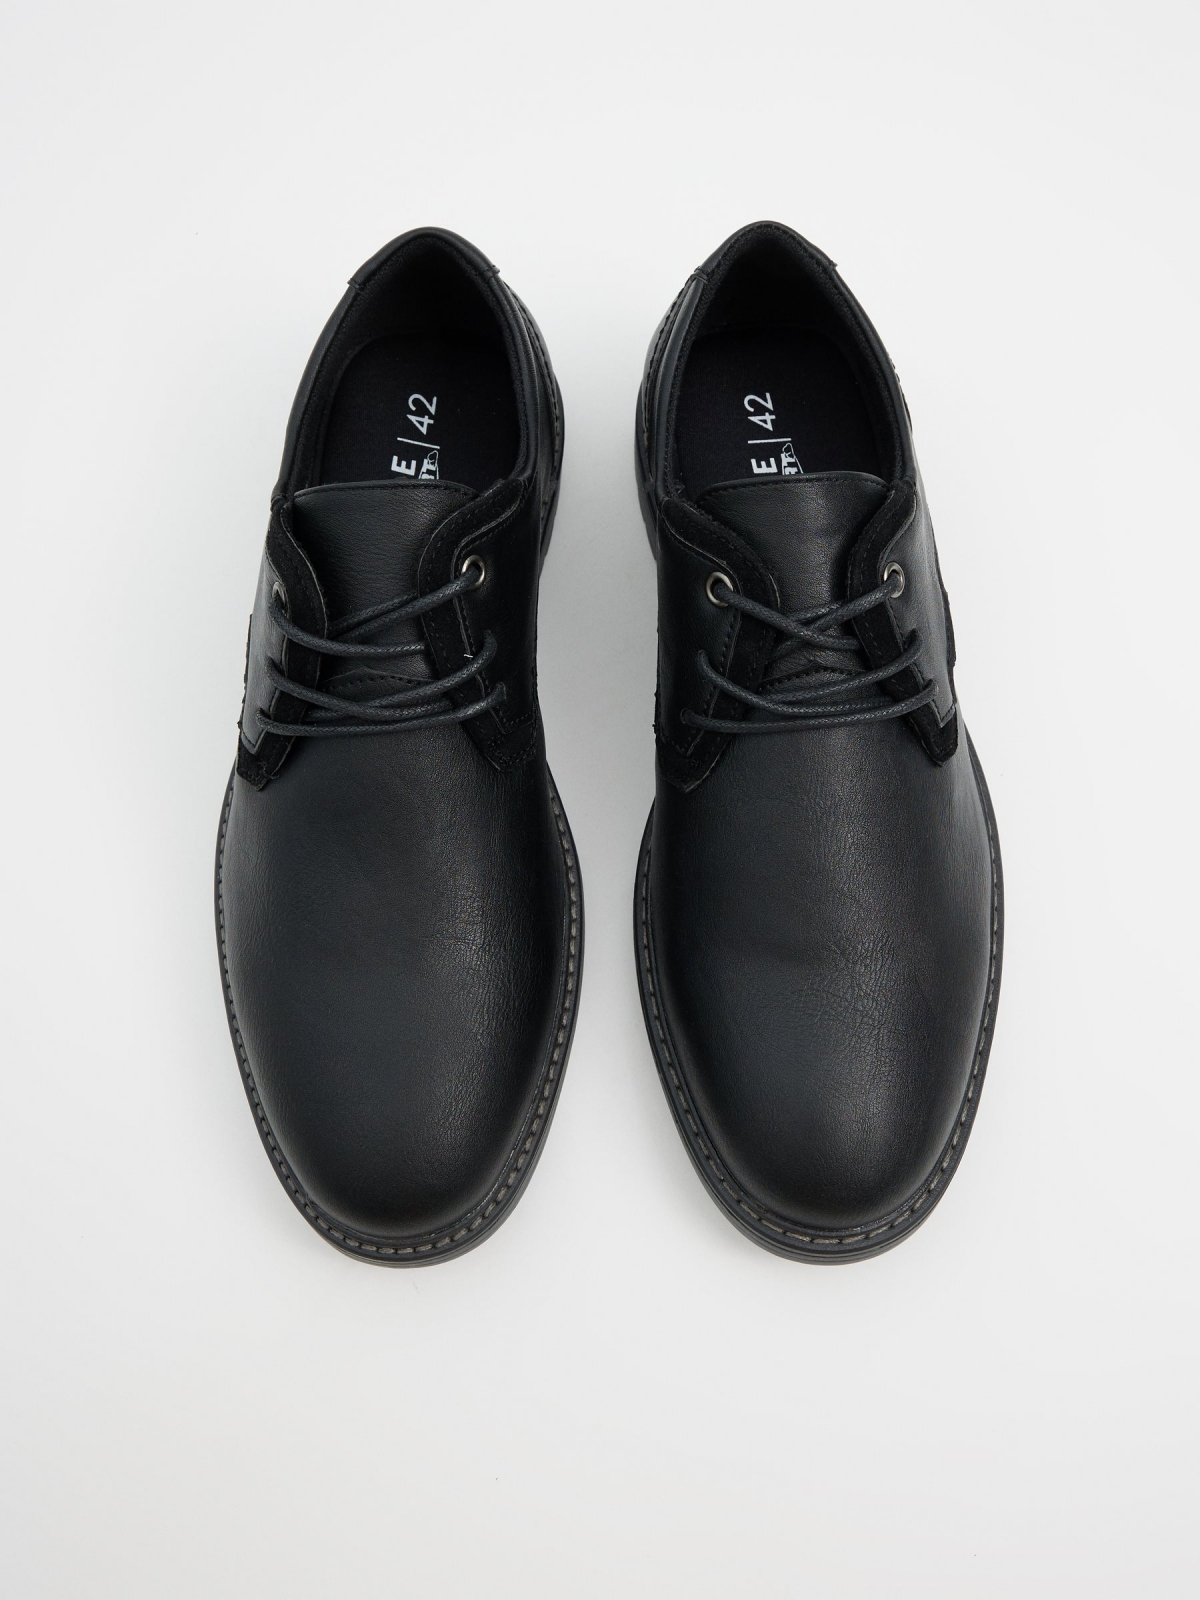 Sapato efeito couro preto preto vista superior